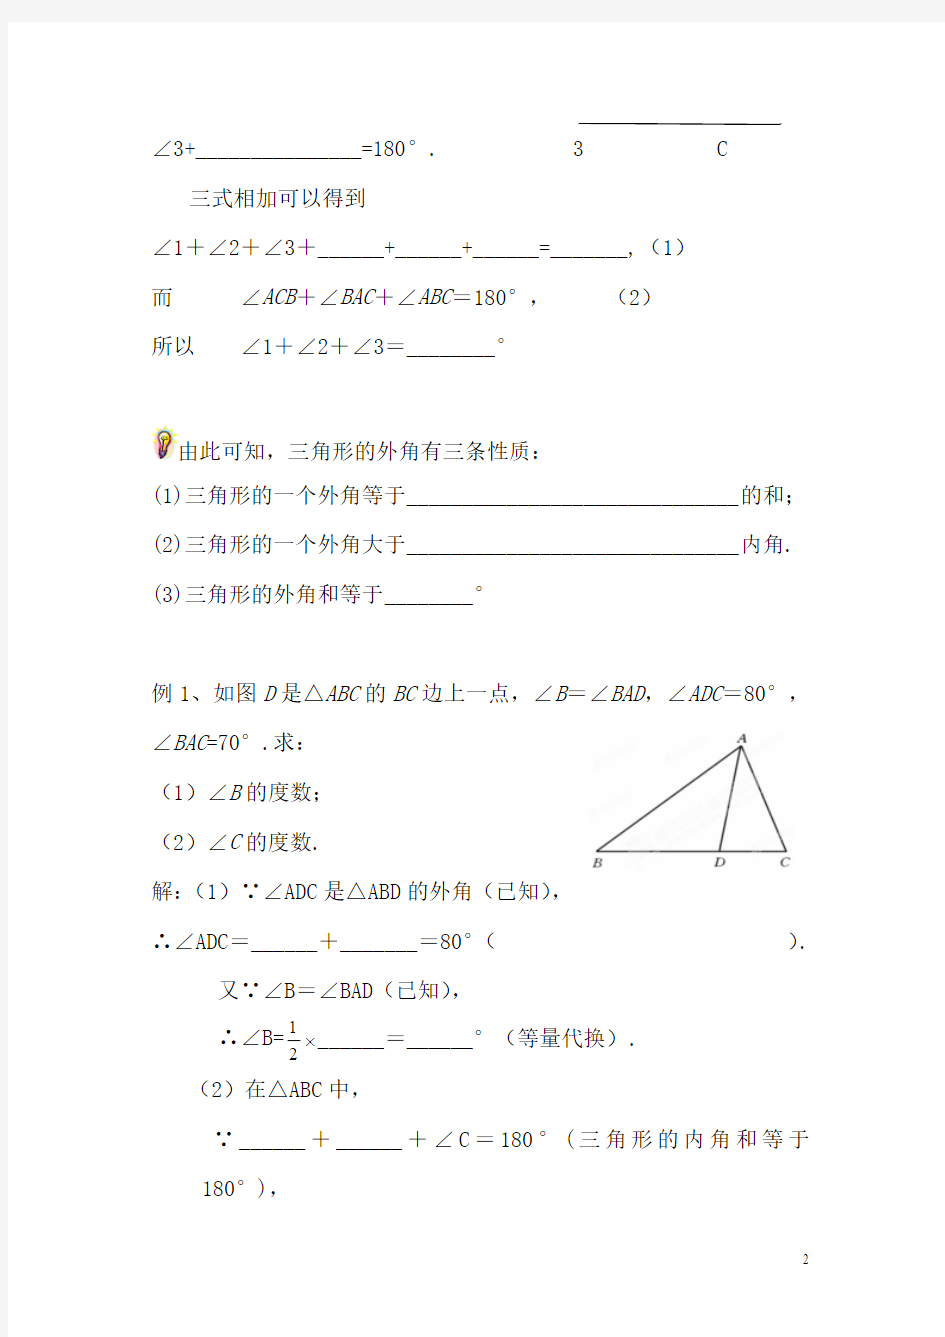 七年级数学三角形内角和练习题